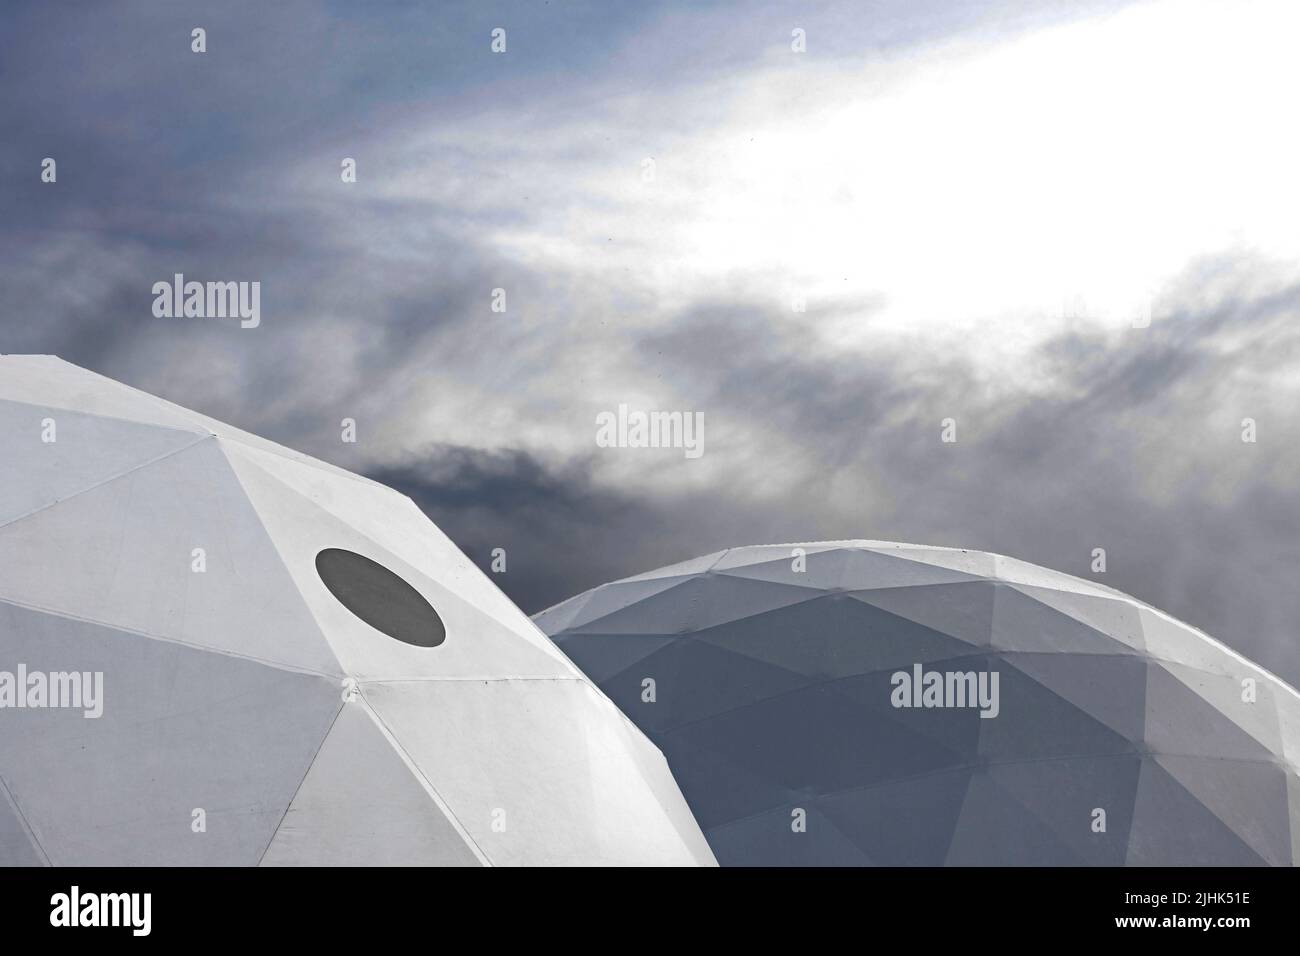 Deux structures ovales de forme triangulaire avec fenêtre noire entourée de nuages sombres ressemblant à un centre d'exploration spatiale Banque D'Images